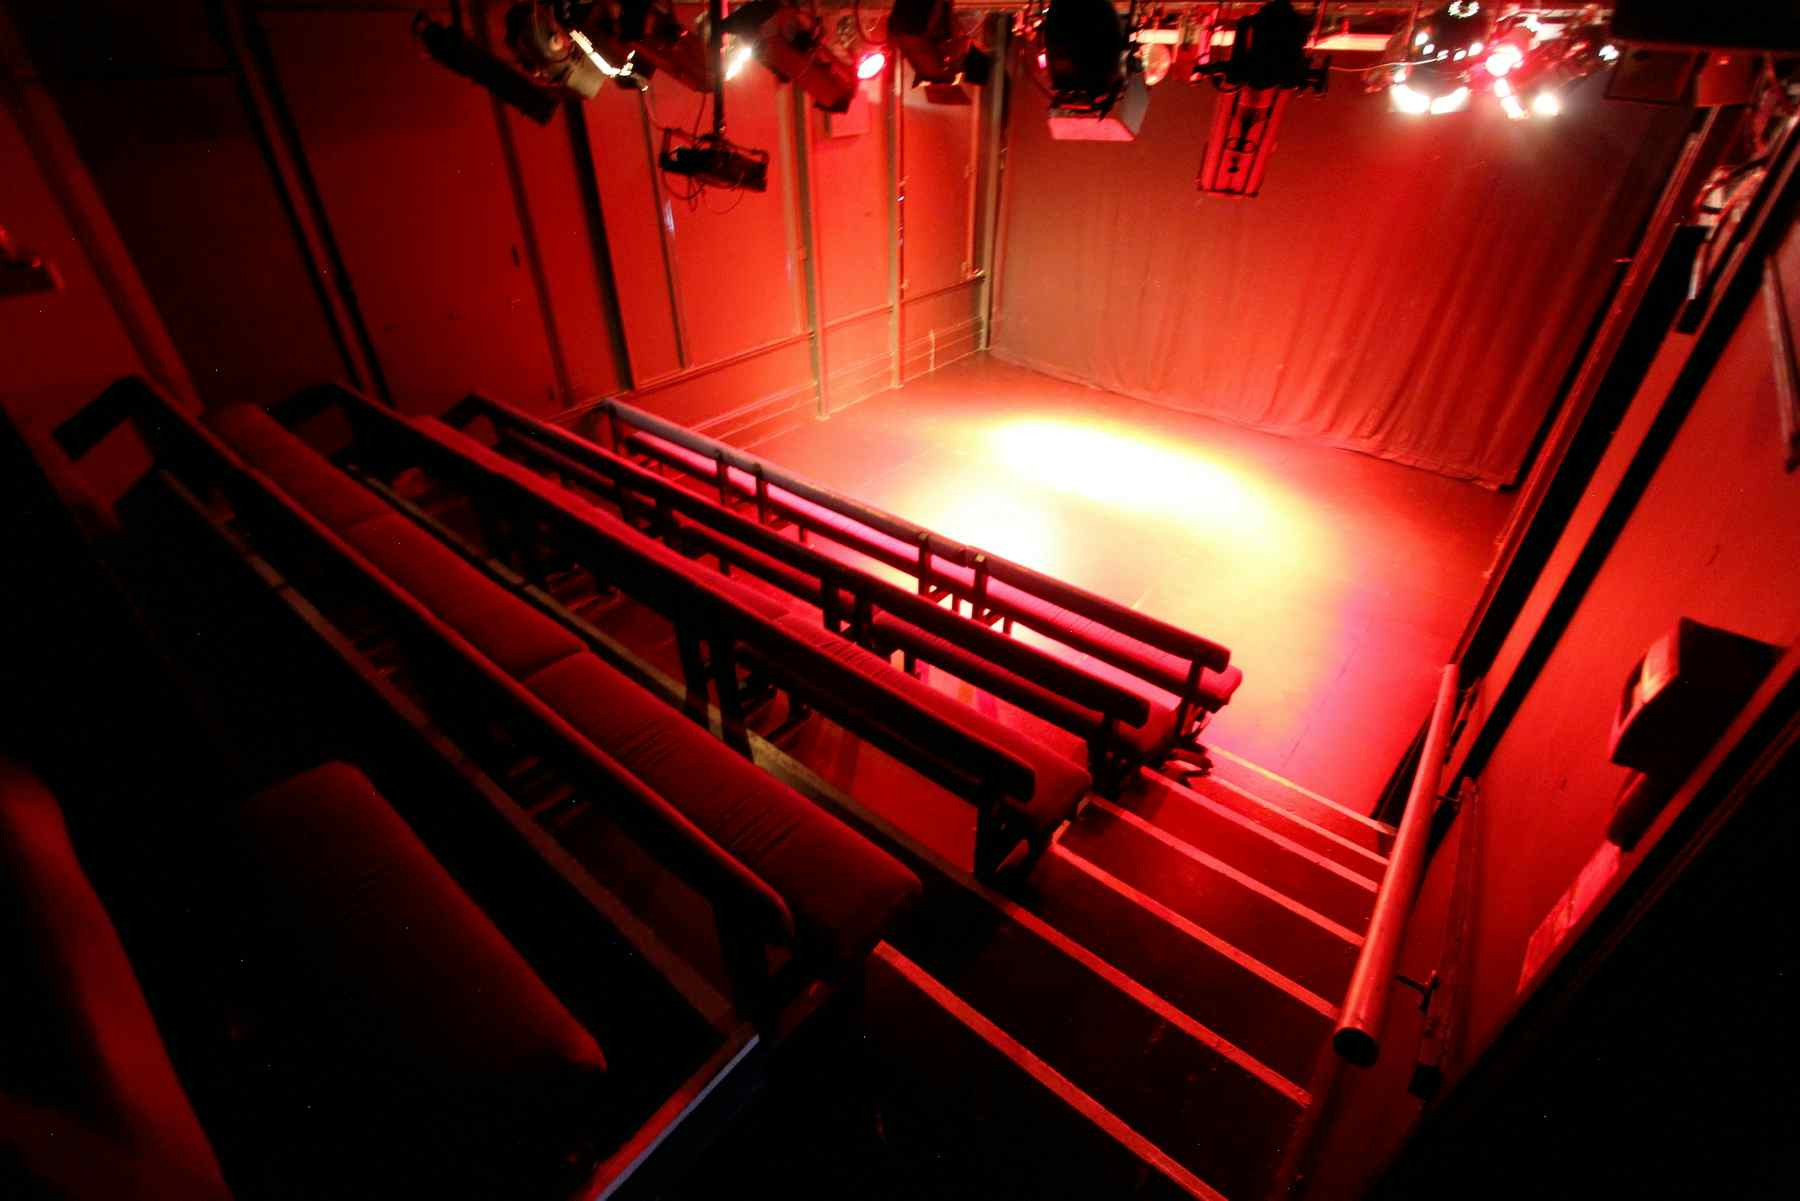 Theatre Black Box, The Etcetera Theatre